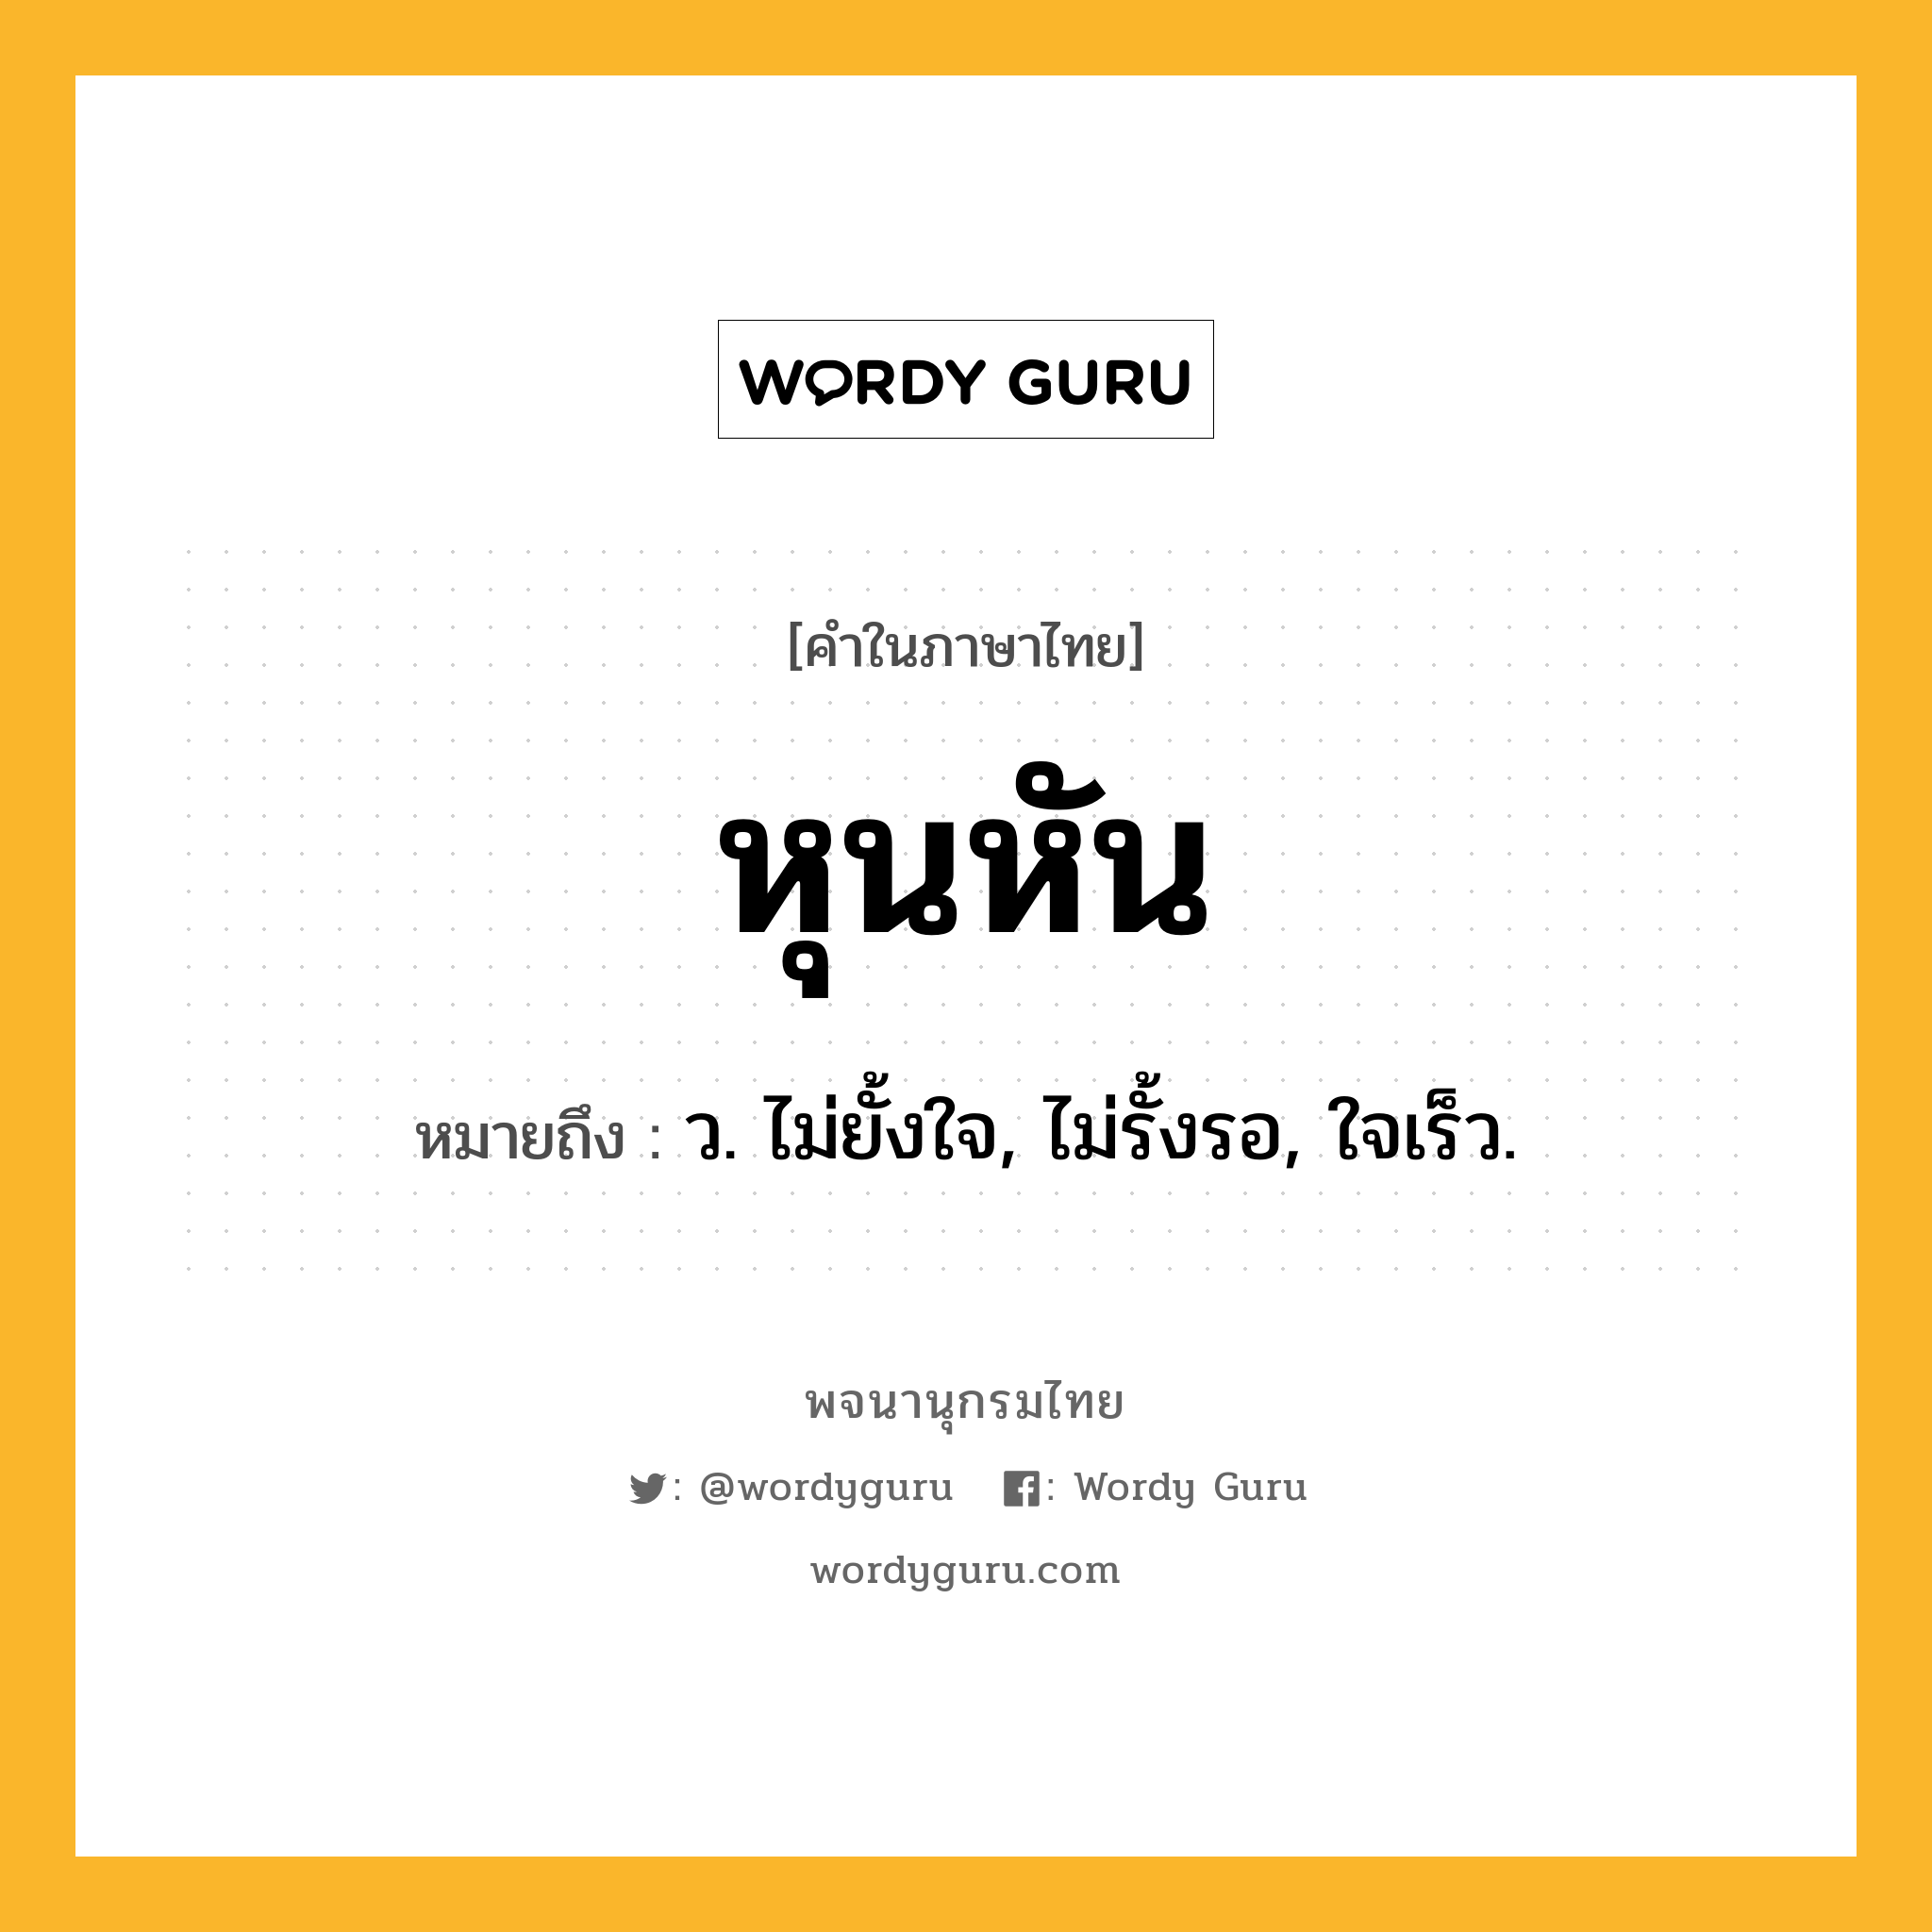 หุนหัน ความหมาย หมายถึงอะไร?, คำในภาษาไทย หุนหัน หมายถึง ว. ไม่ยั้งใจ, ไม่รั้งรอ, ใจเร็ว.